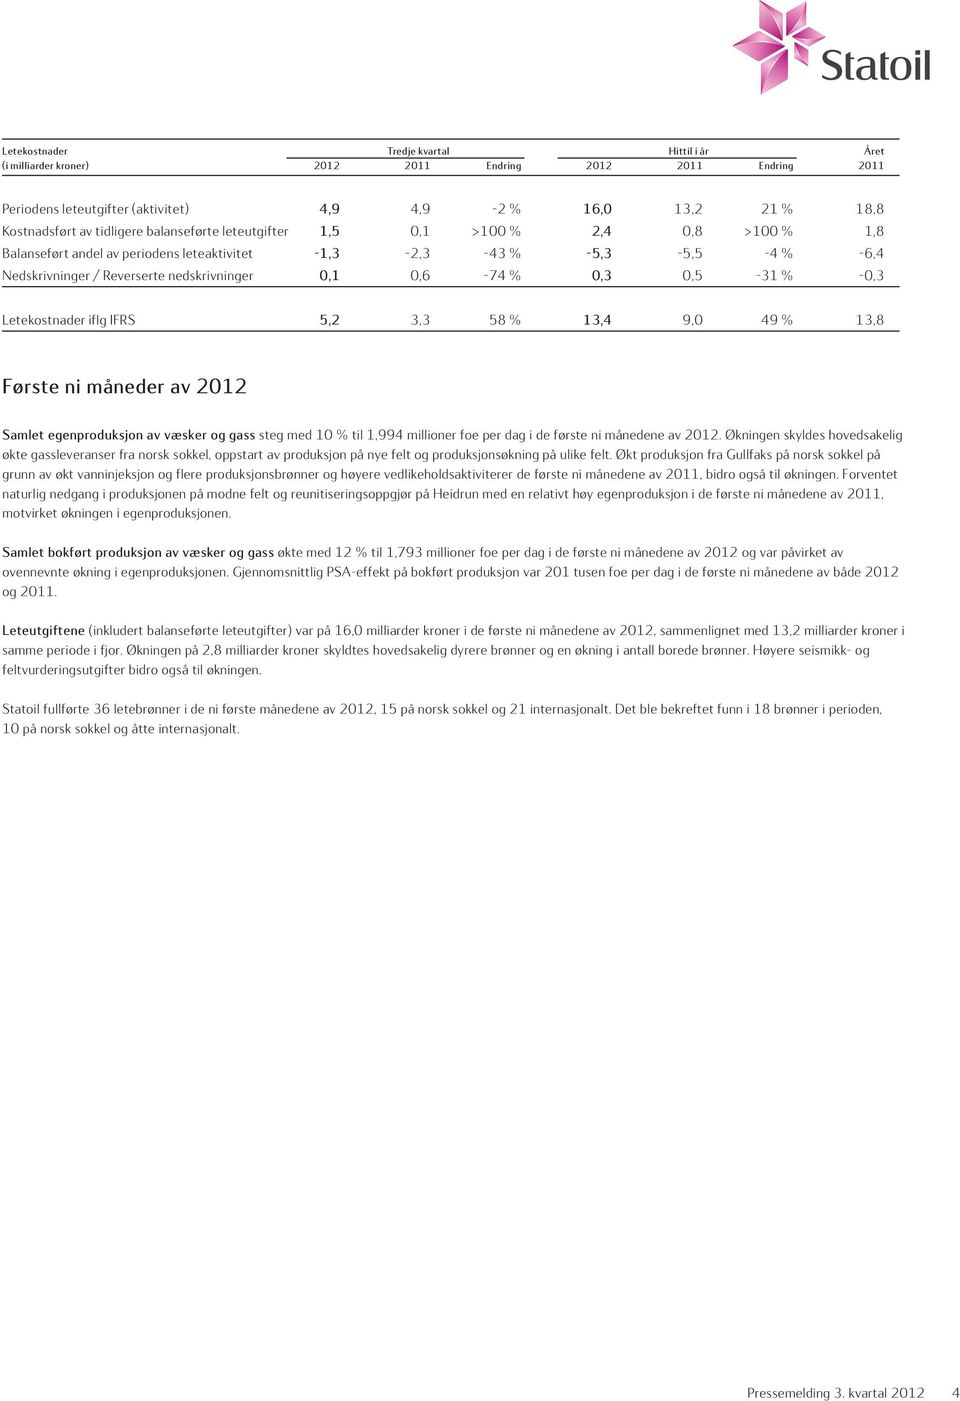 0,6-74 % 0,3 0,5-31 % -0,3 Letekostnader iflg IFRS 5,2 3,3 58 % 13,4 9,0 49 % 13,8 Første ni måneder av 2012 Samlet egenproduksjon av væsker og gass steg med 10 % til 1,994 millioner foe per dag i de